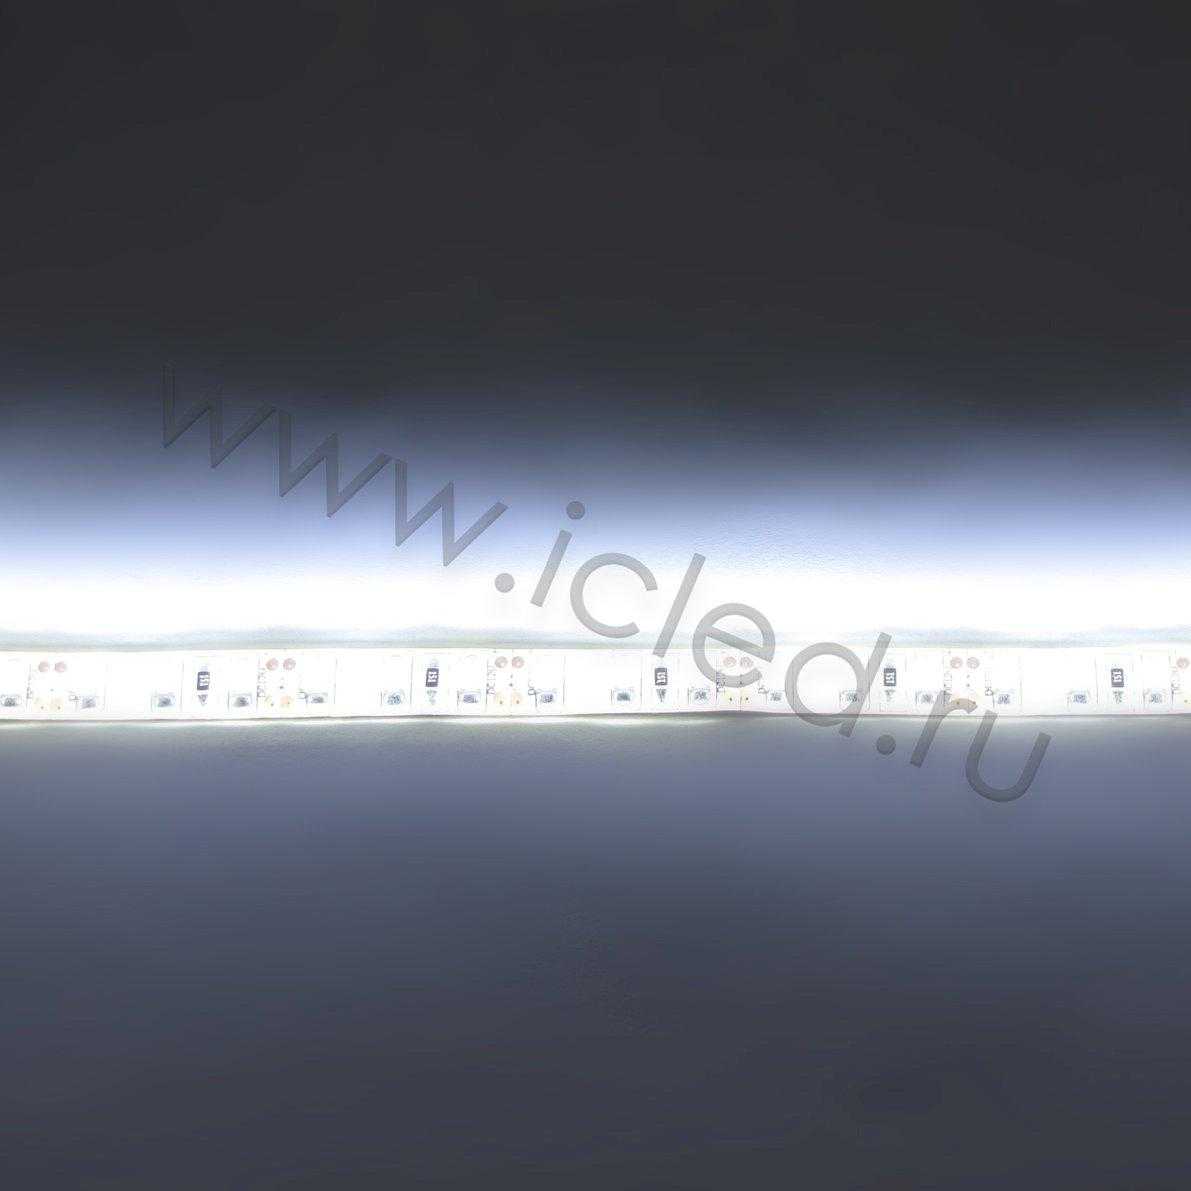 Влагозащищенные светодиодные ленты Светодиодная лента LUX class, 3528, 120 led/m, White, 12V, IP65 Icled